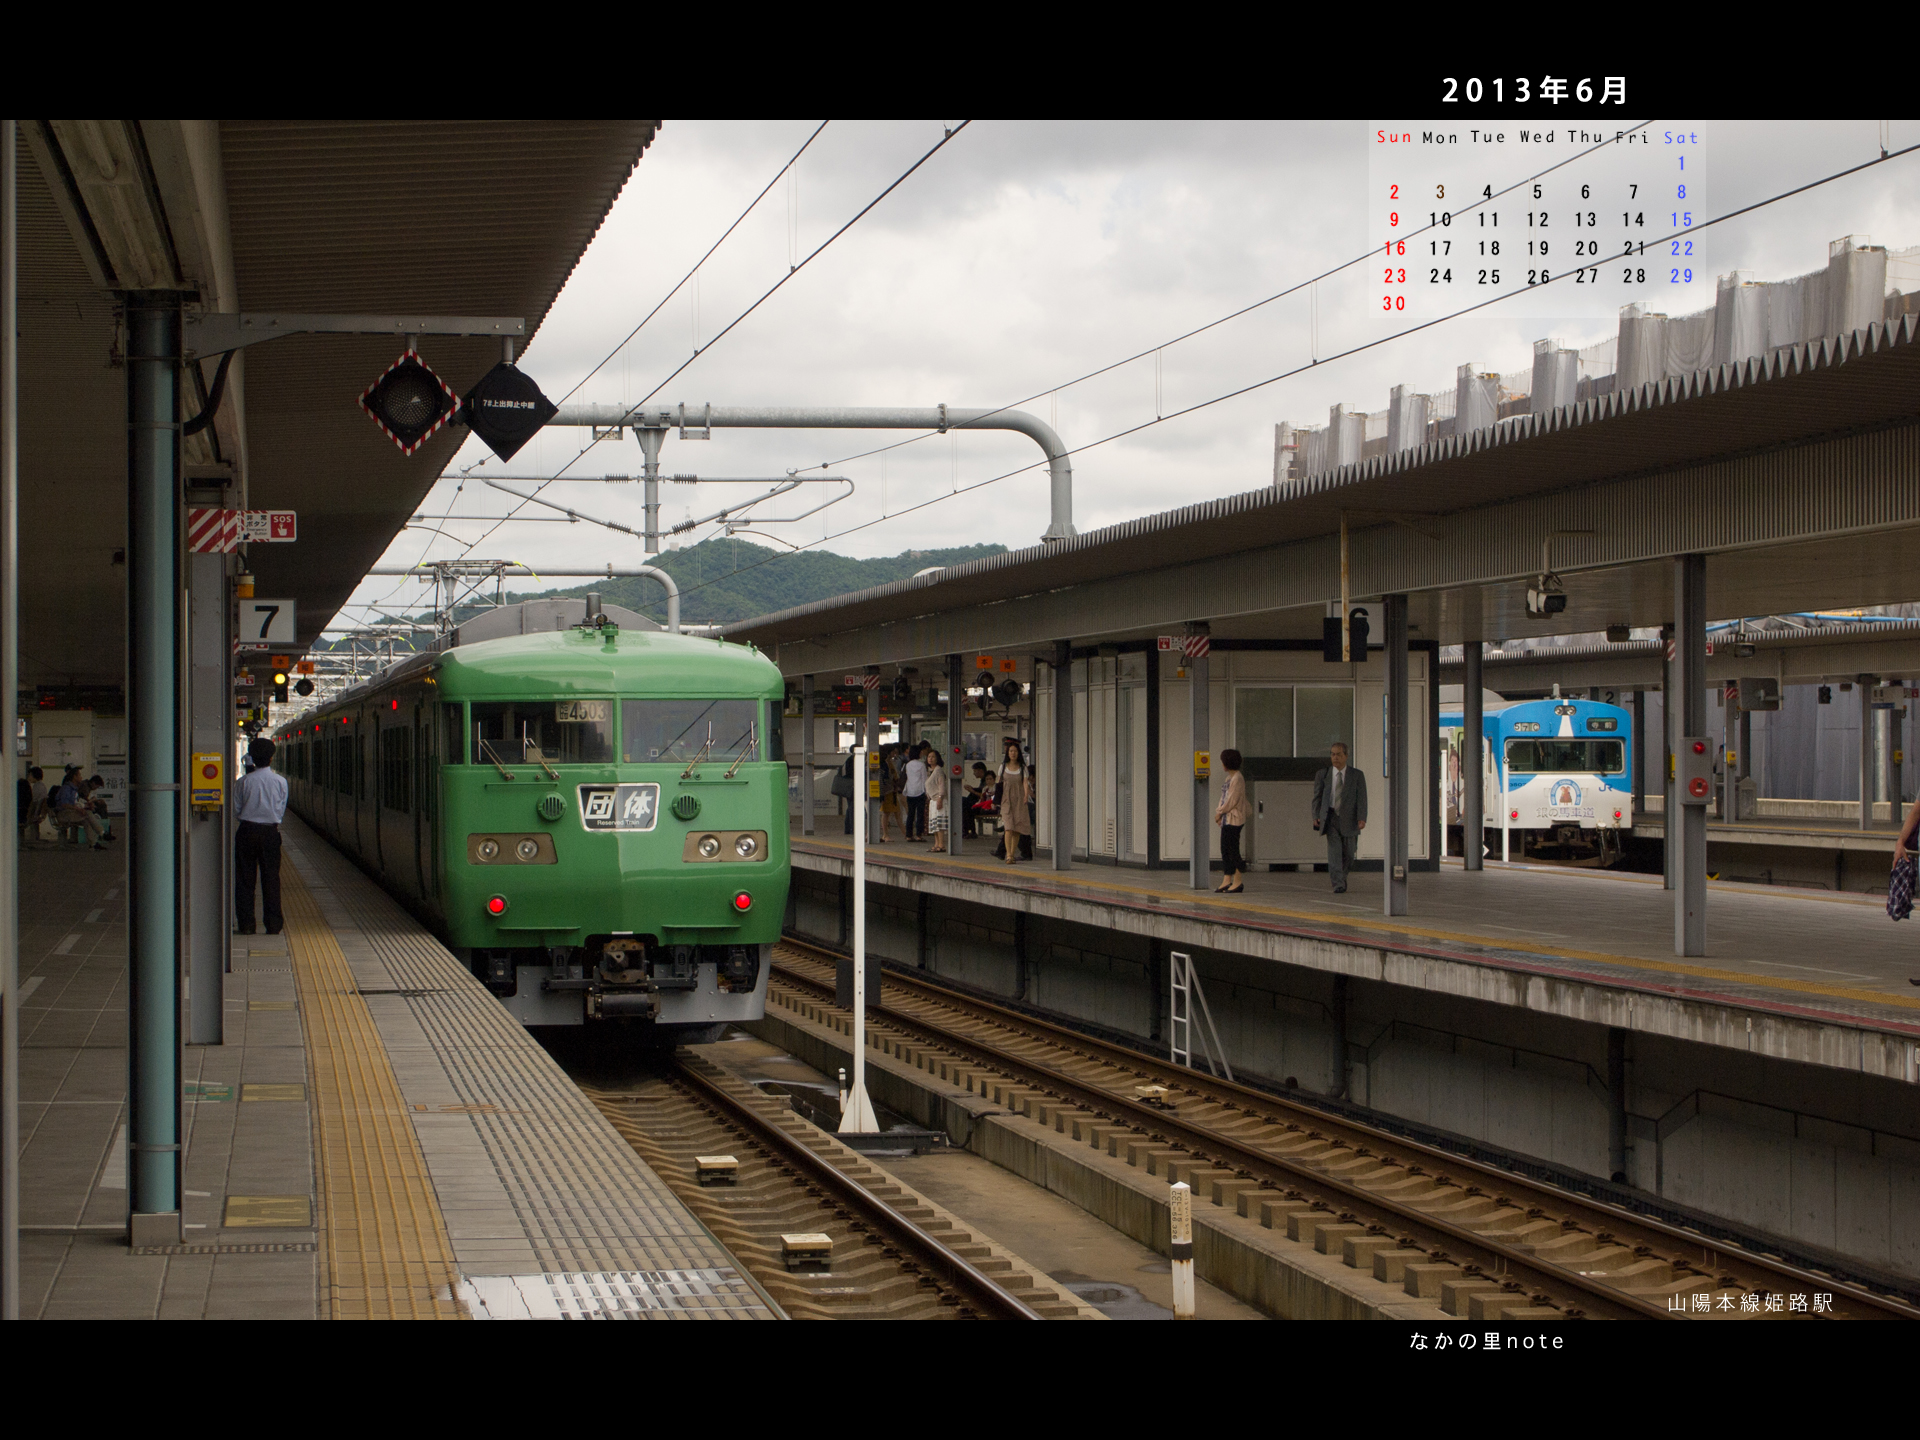 2013年6月4対3画面用壁紙１１７系金光臨停車中の姫路駅 北播磨ローカルネットワーク